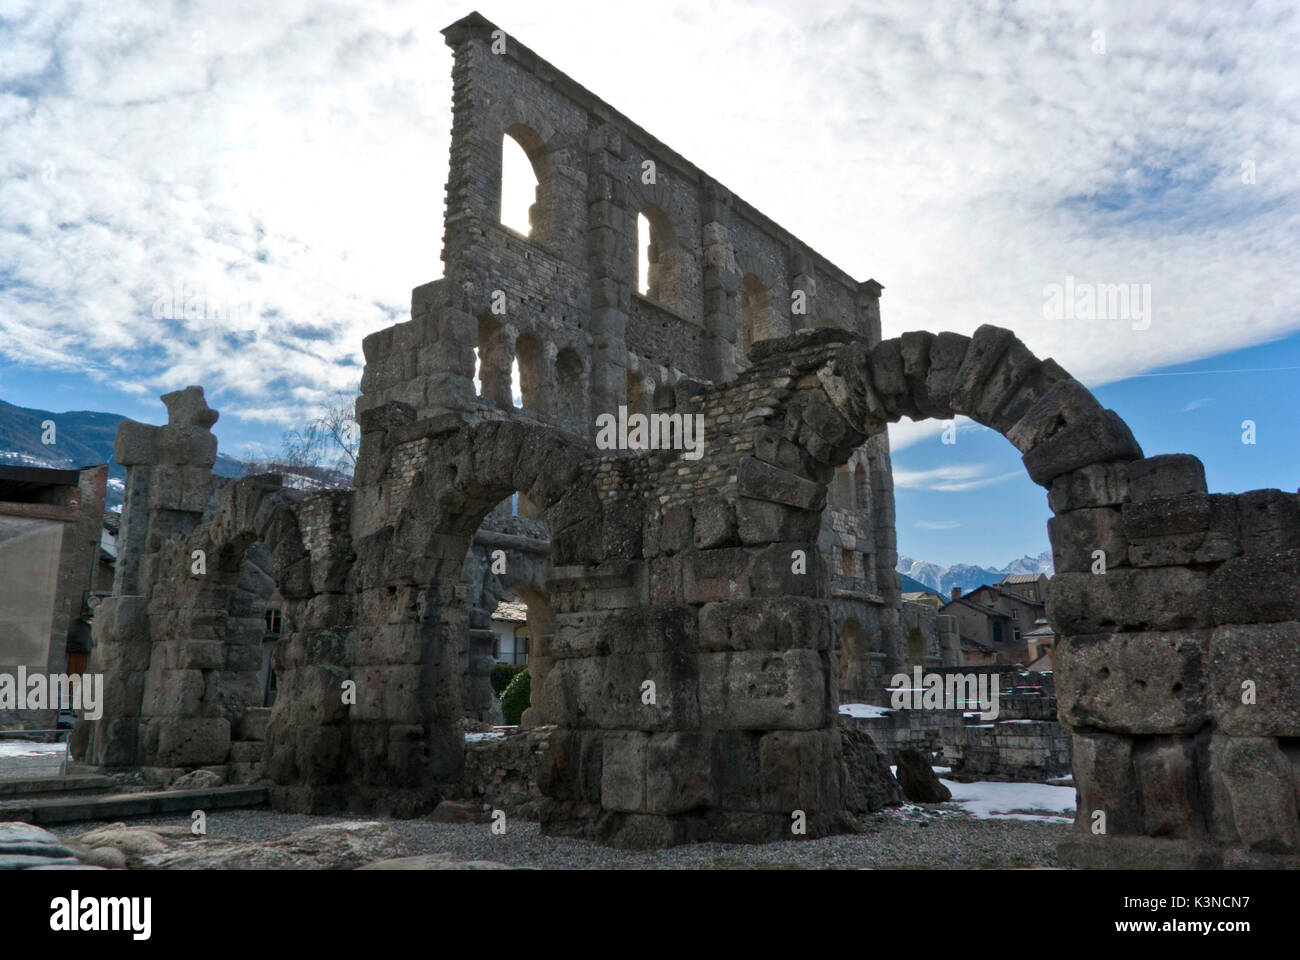 Das römische Theater mit seinen Bögen sind noch gut in der Mitte des Aosta Stadt erhalten. Aostatal, Italien Stockfoto